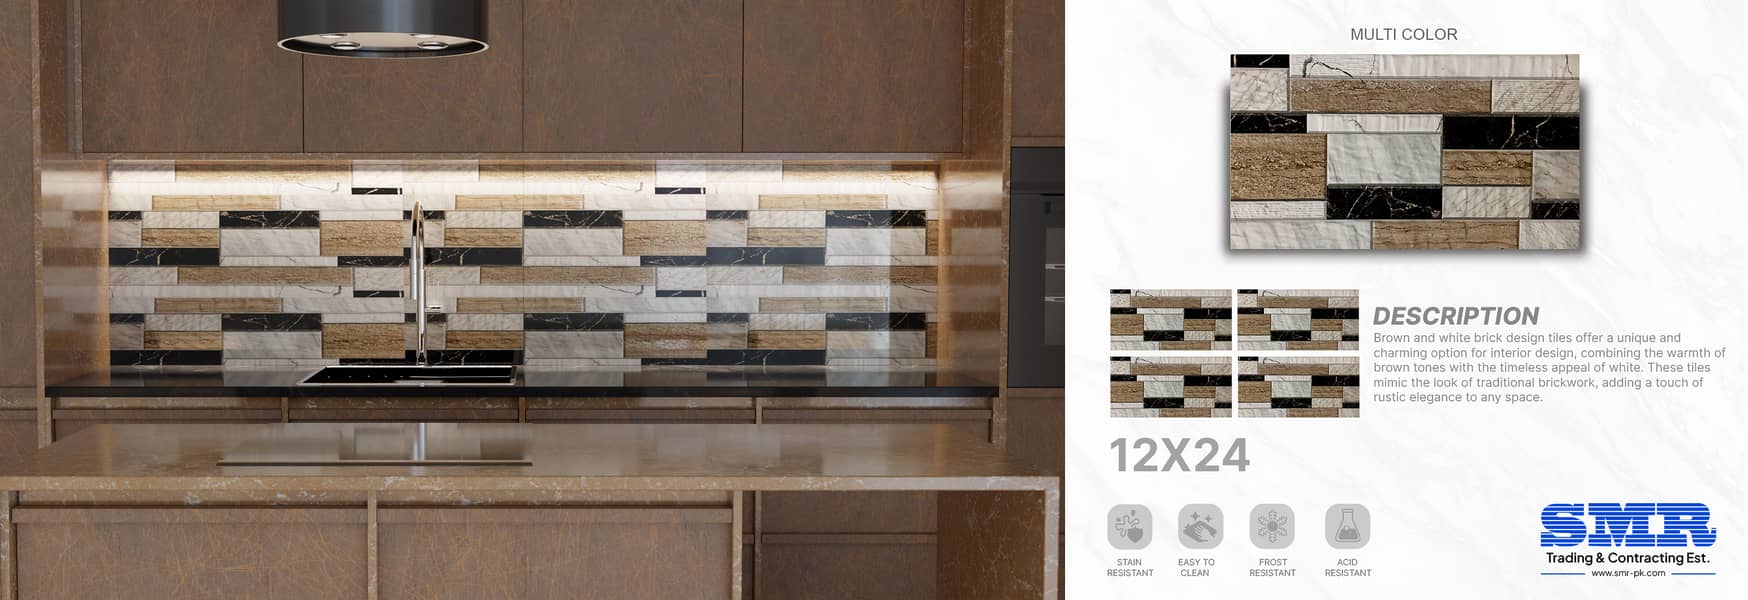 12x24 kitchen tiles 6